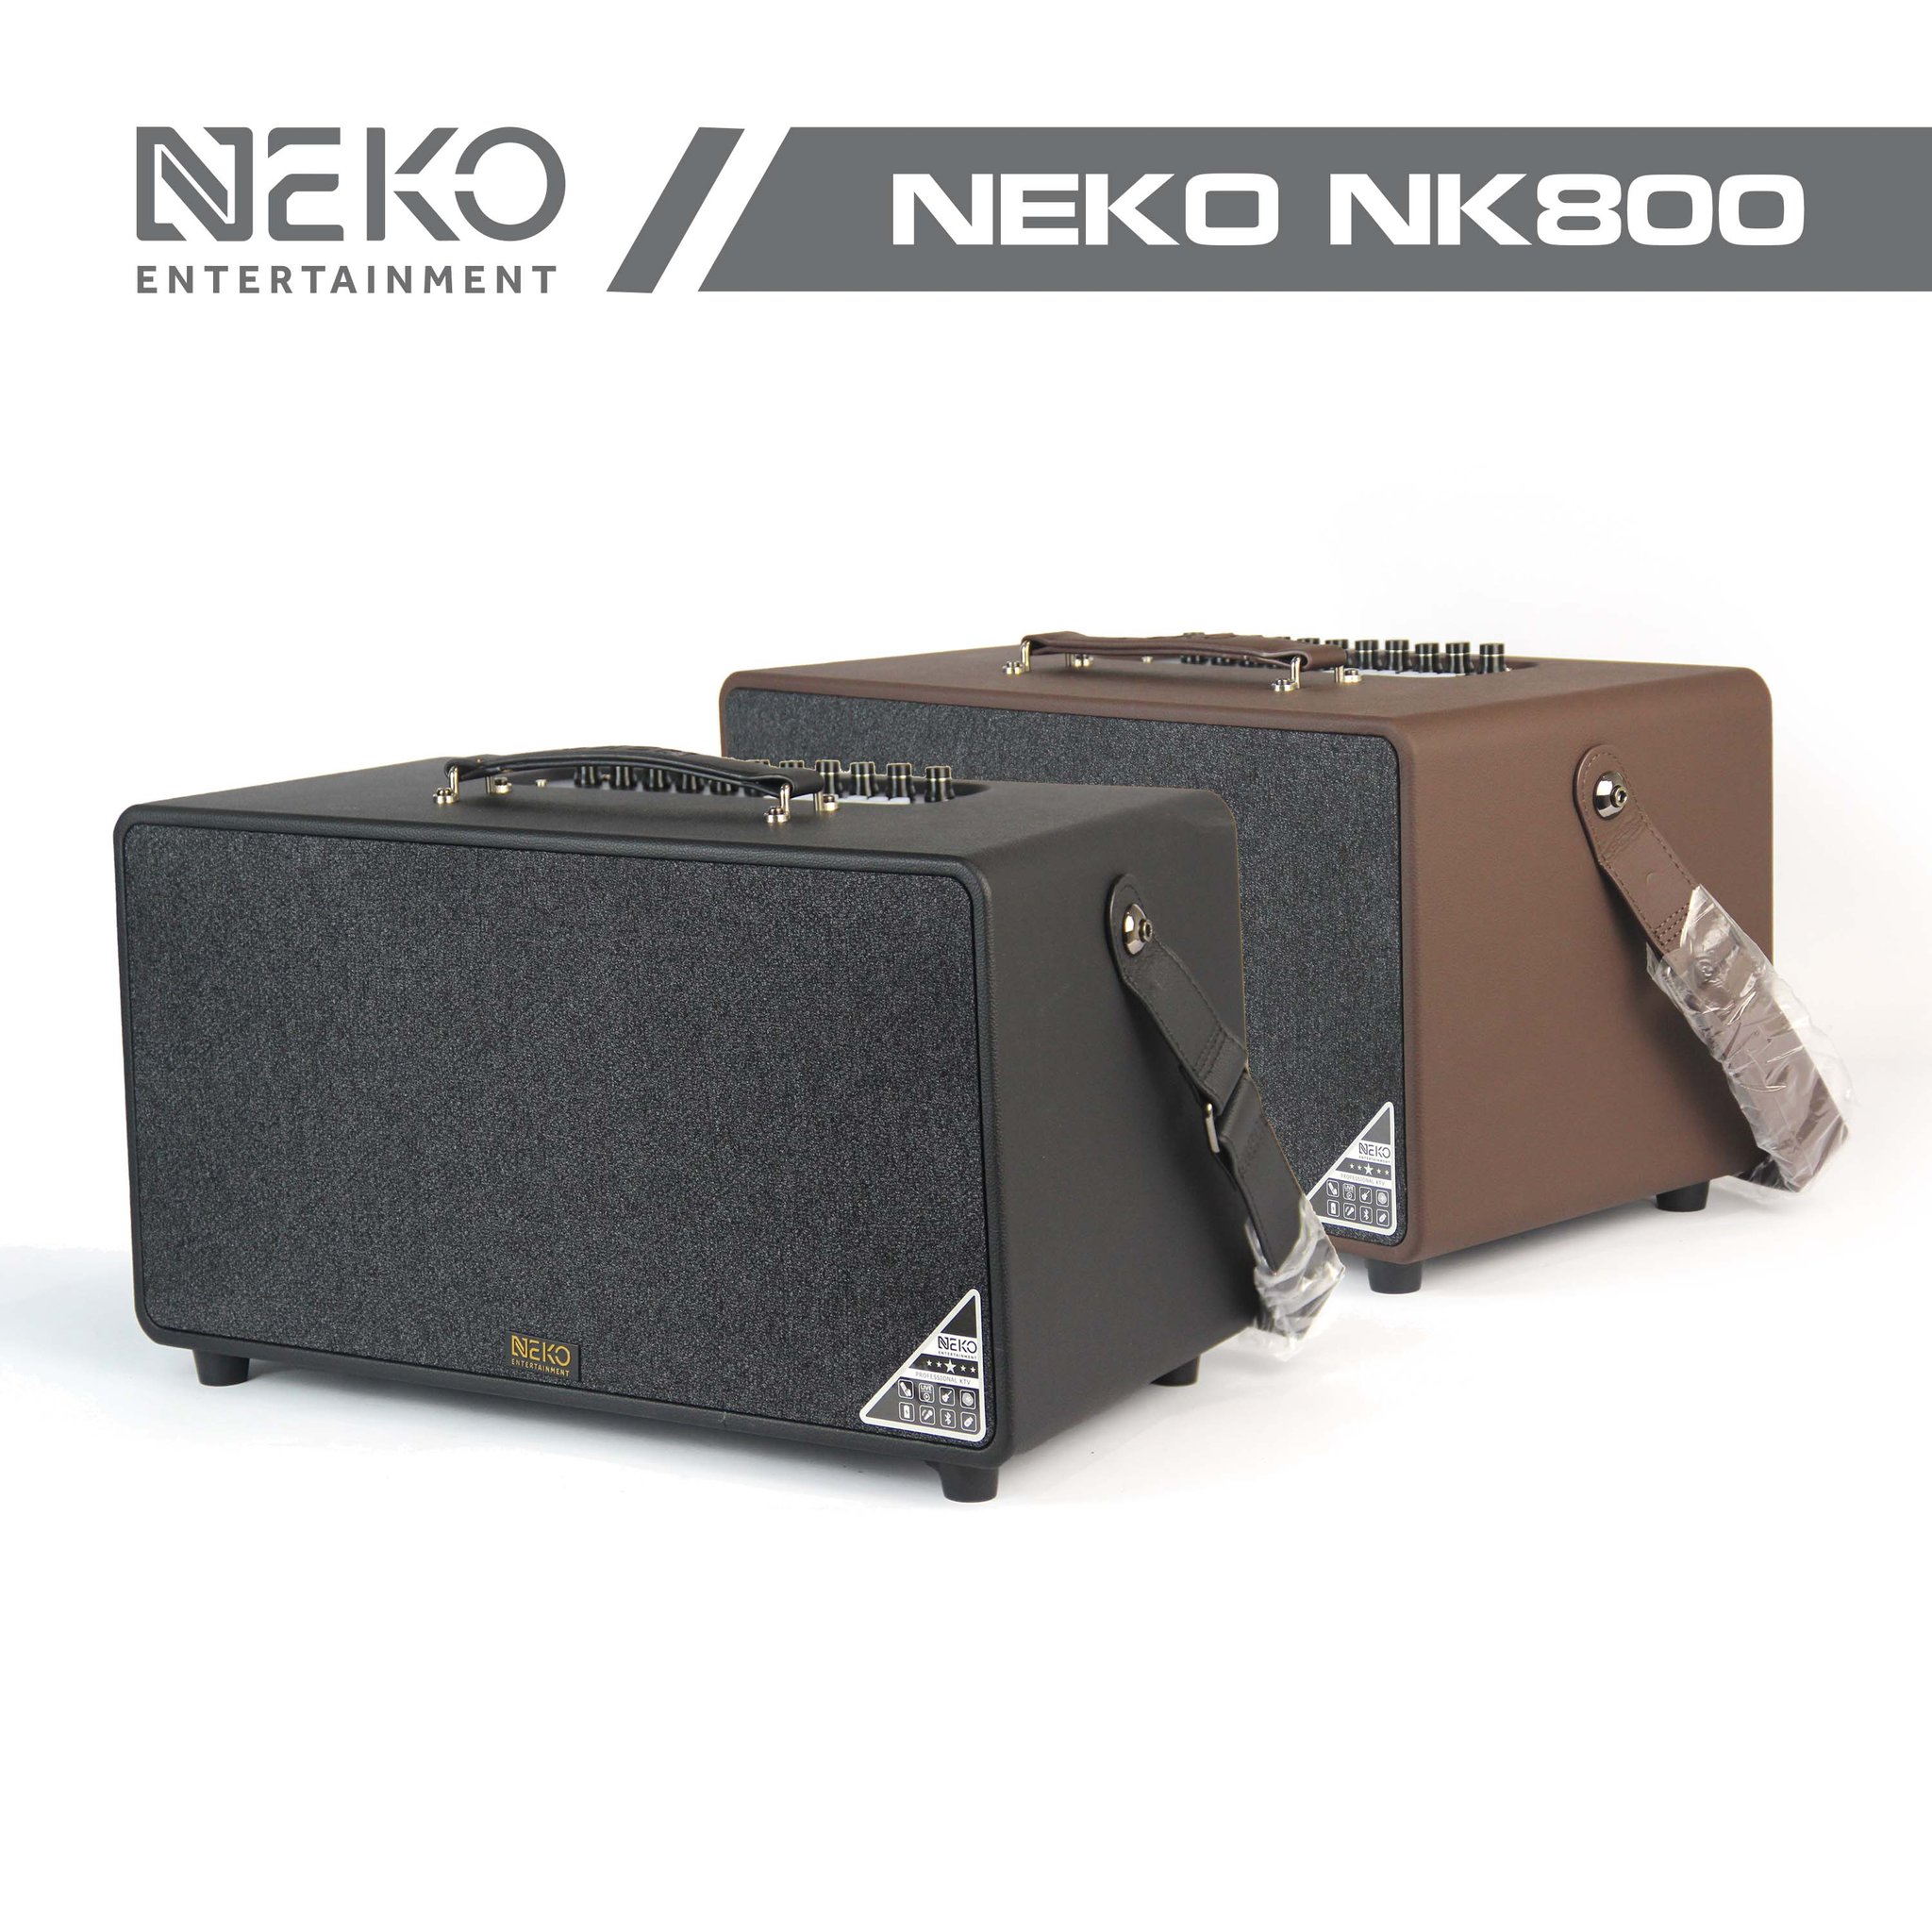 Loa Karaoke Xách Tay Neko NK800 (Công Suất 120W, Kèm 2 Micro Không Dây UFH) - Hàng Chính Hãng